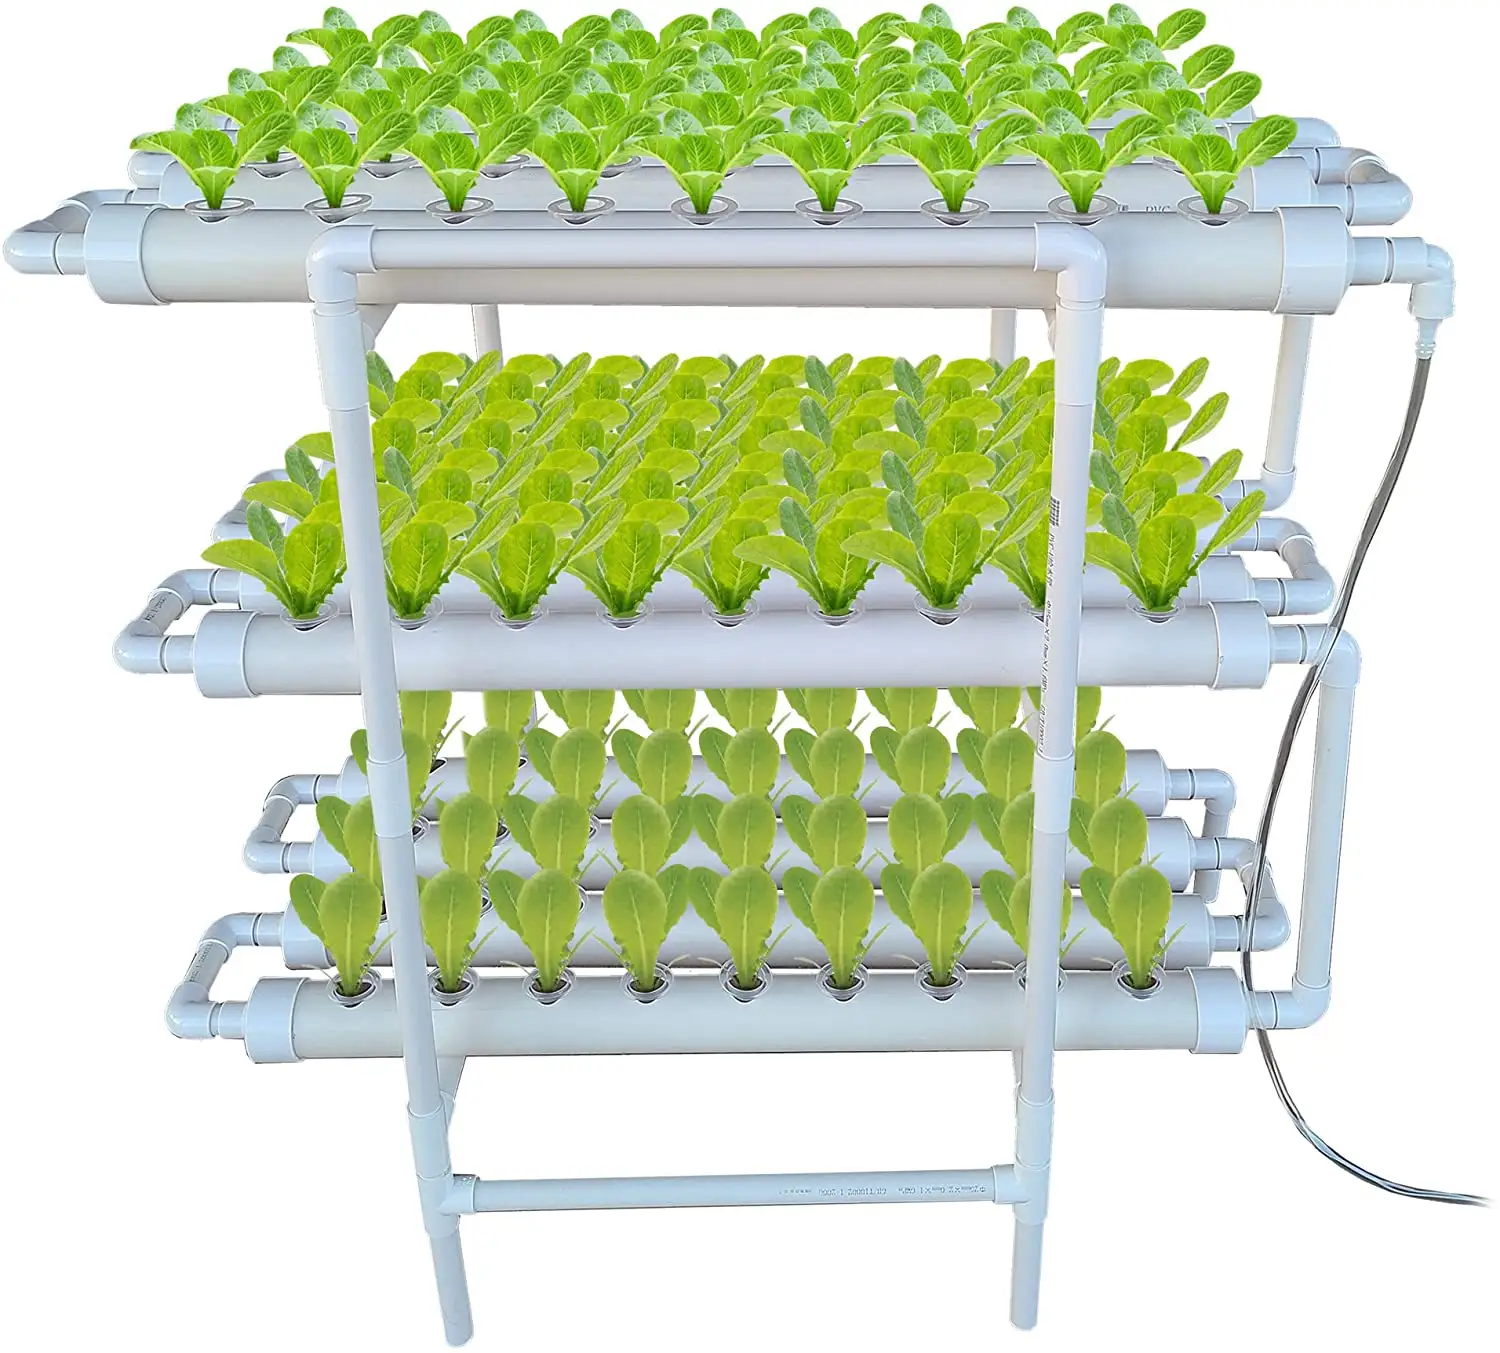 Piccola casa idroponica giardino serra intelligente a 108 fori verdura Kit con 3 strati 12 tubi in PVC completo sistema di coltura idroponica